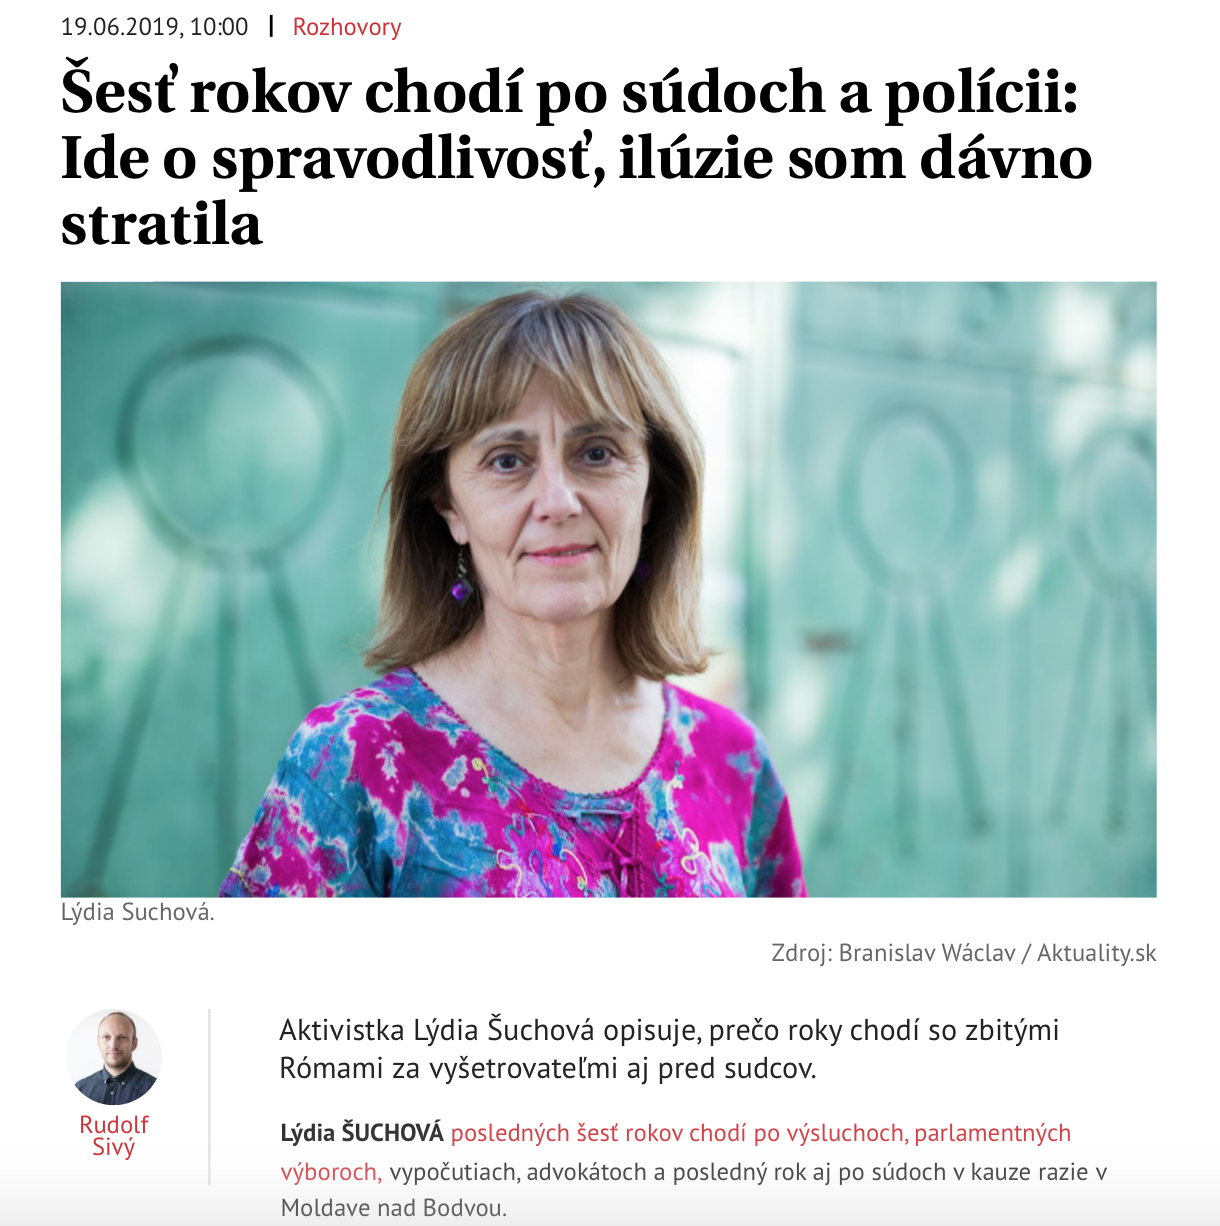 Aktuality.sk: Rozhovor s Lýdou Šuchovou